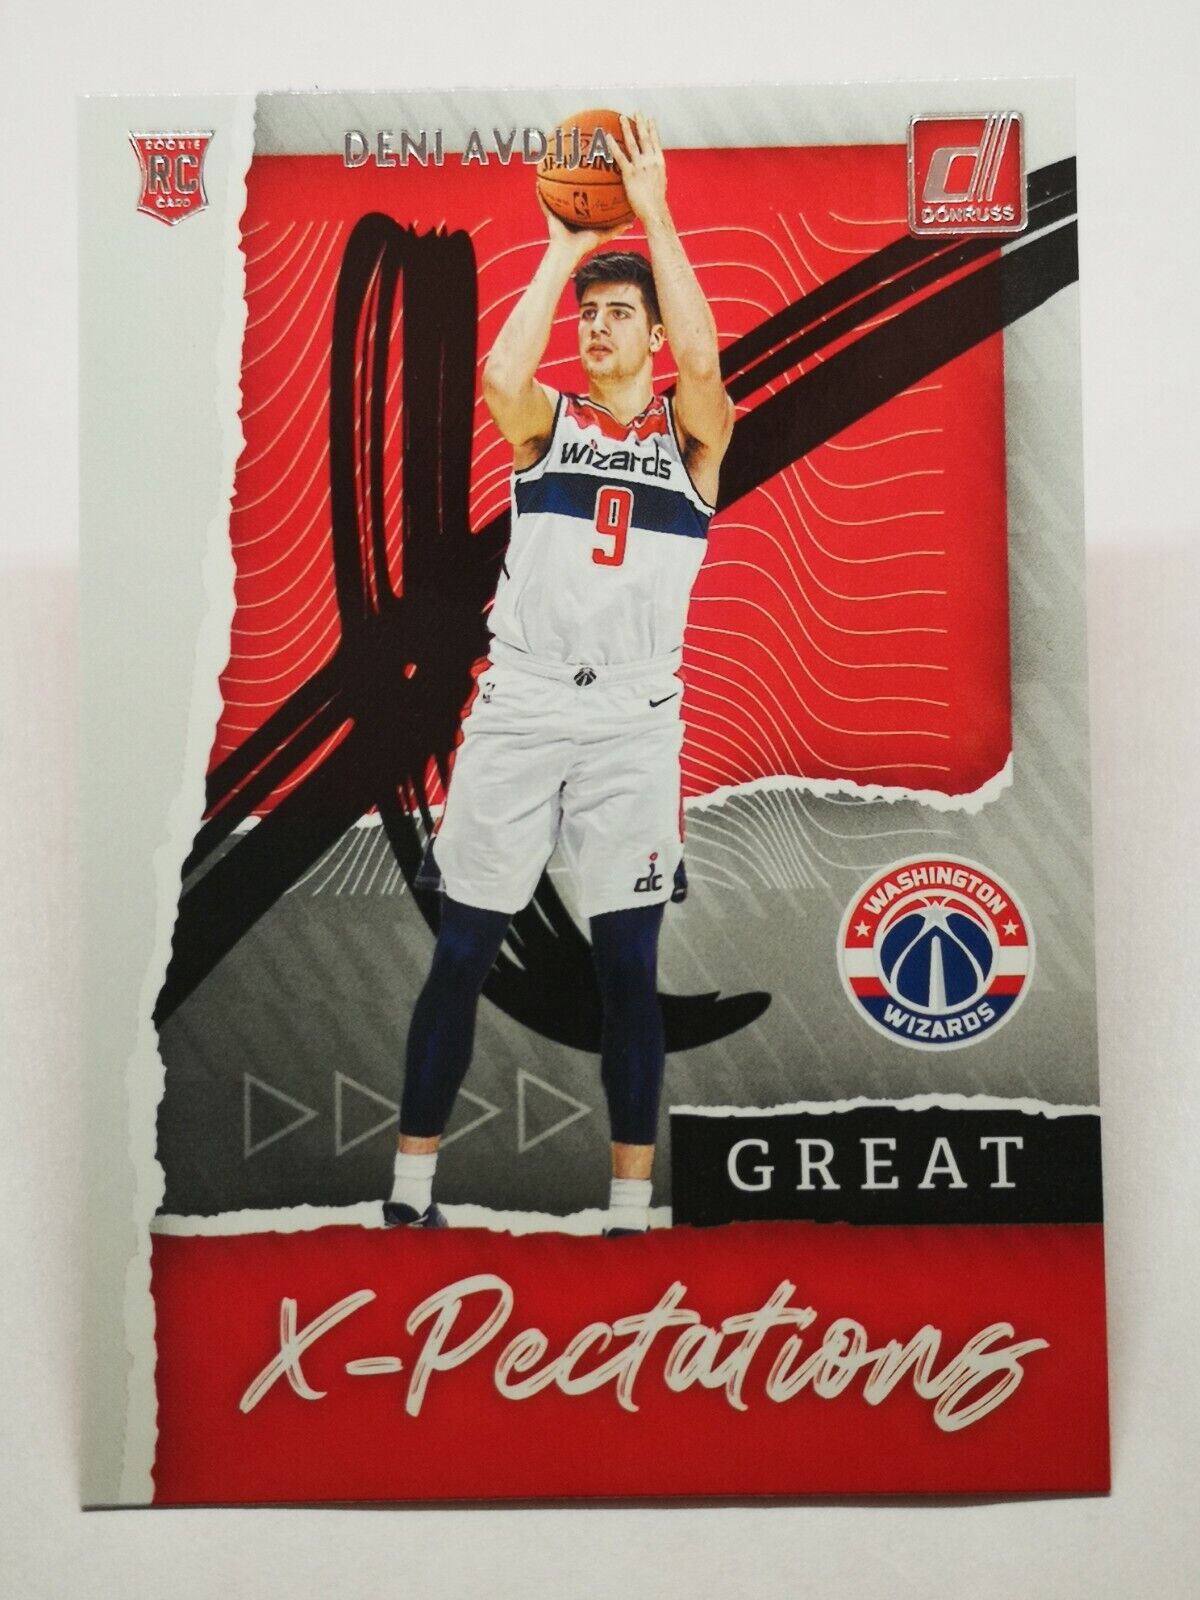 2020-21 Panini Donruss N4 Card NBA Great X-Spectations RC Rookie Deni Avdija #9